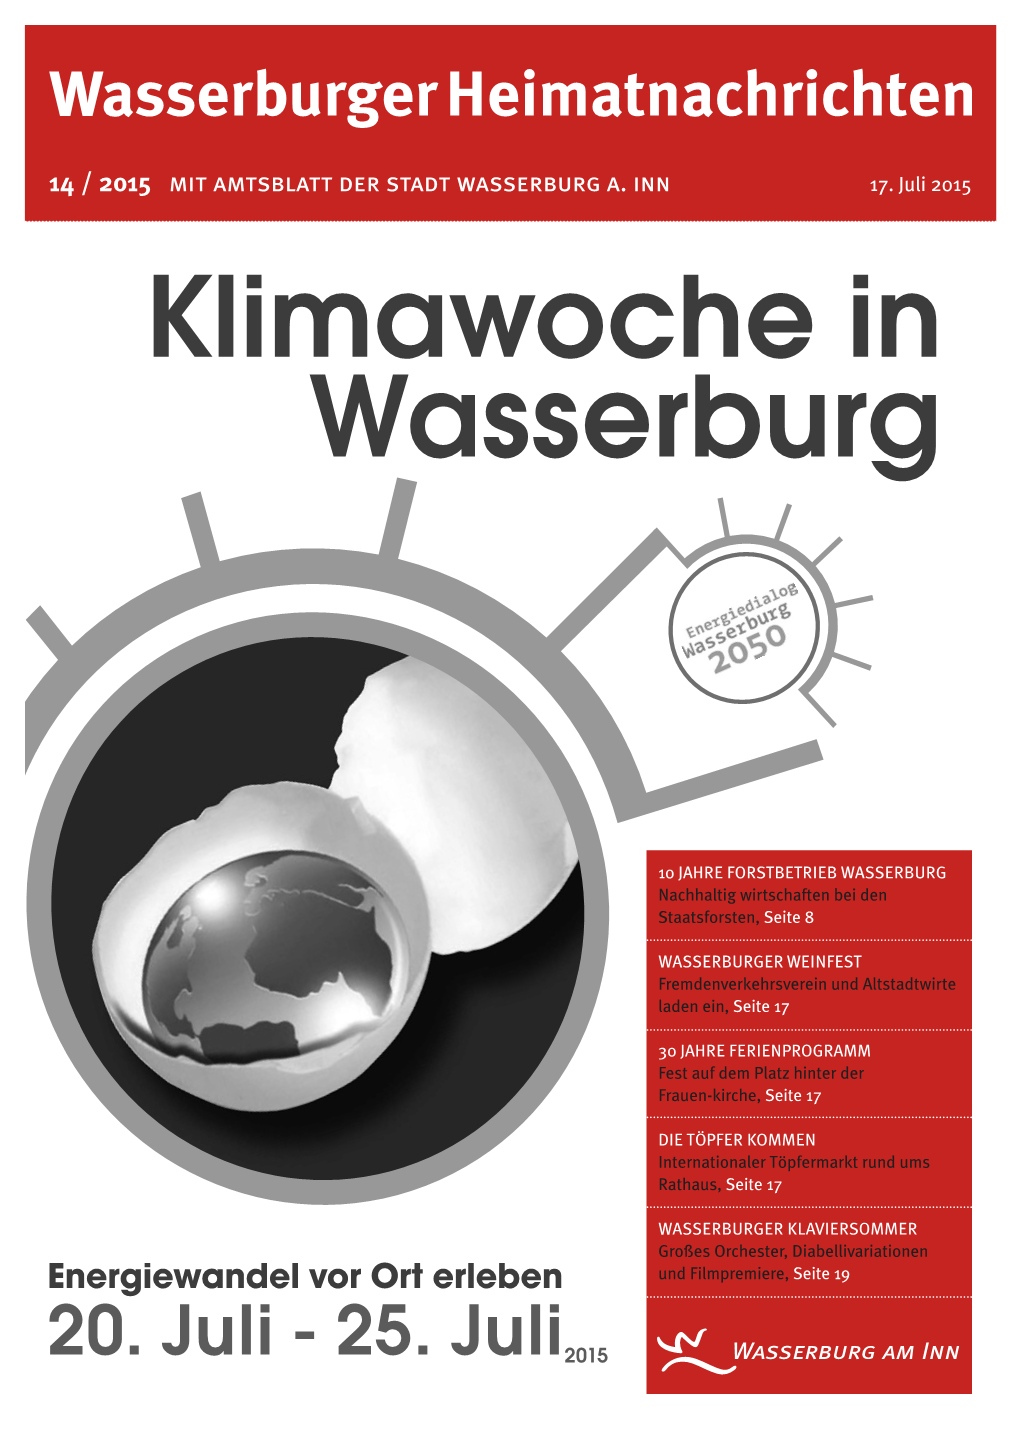 25. Juli2015 Seite 2 14/2015 Abfallwirtschaft Energiedialog Wasserburg 2050 Altpapiersammlung Am Samstag, 25